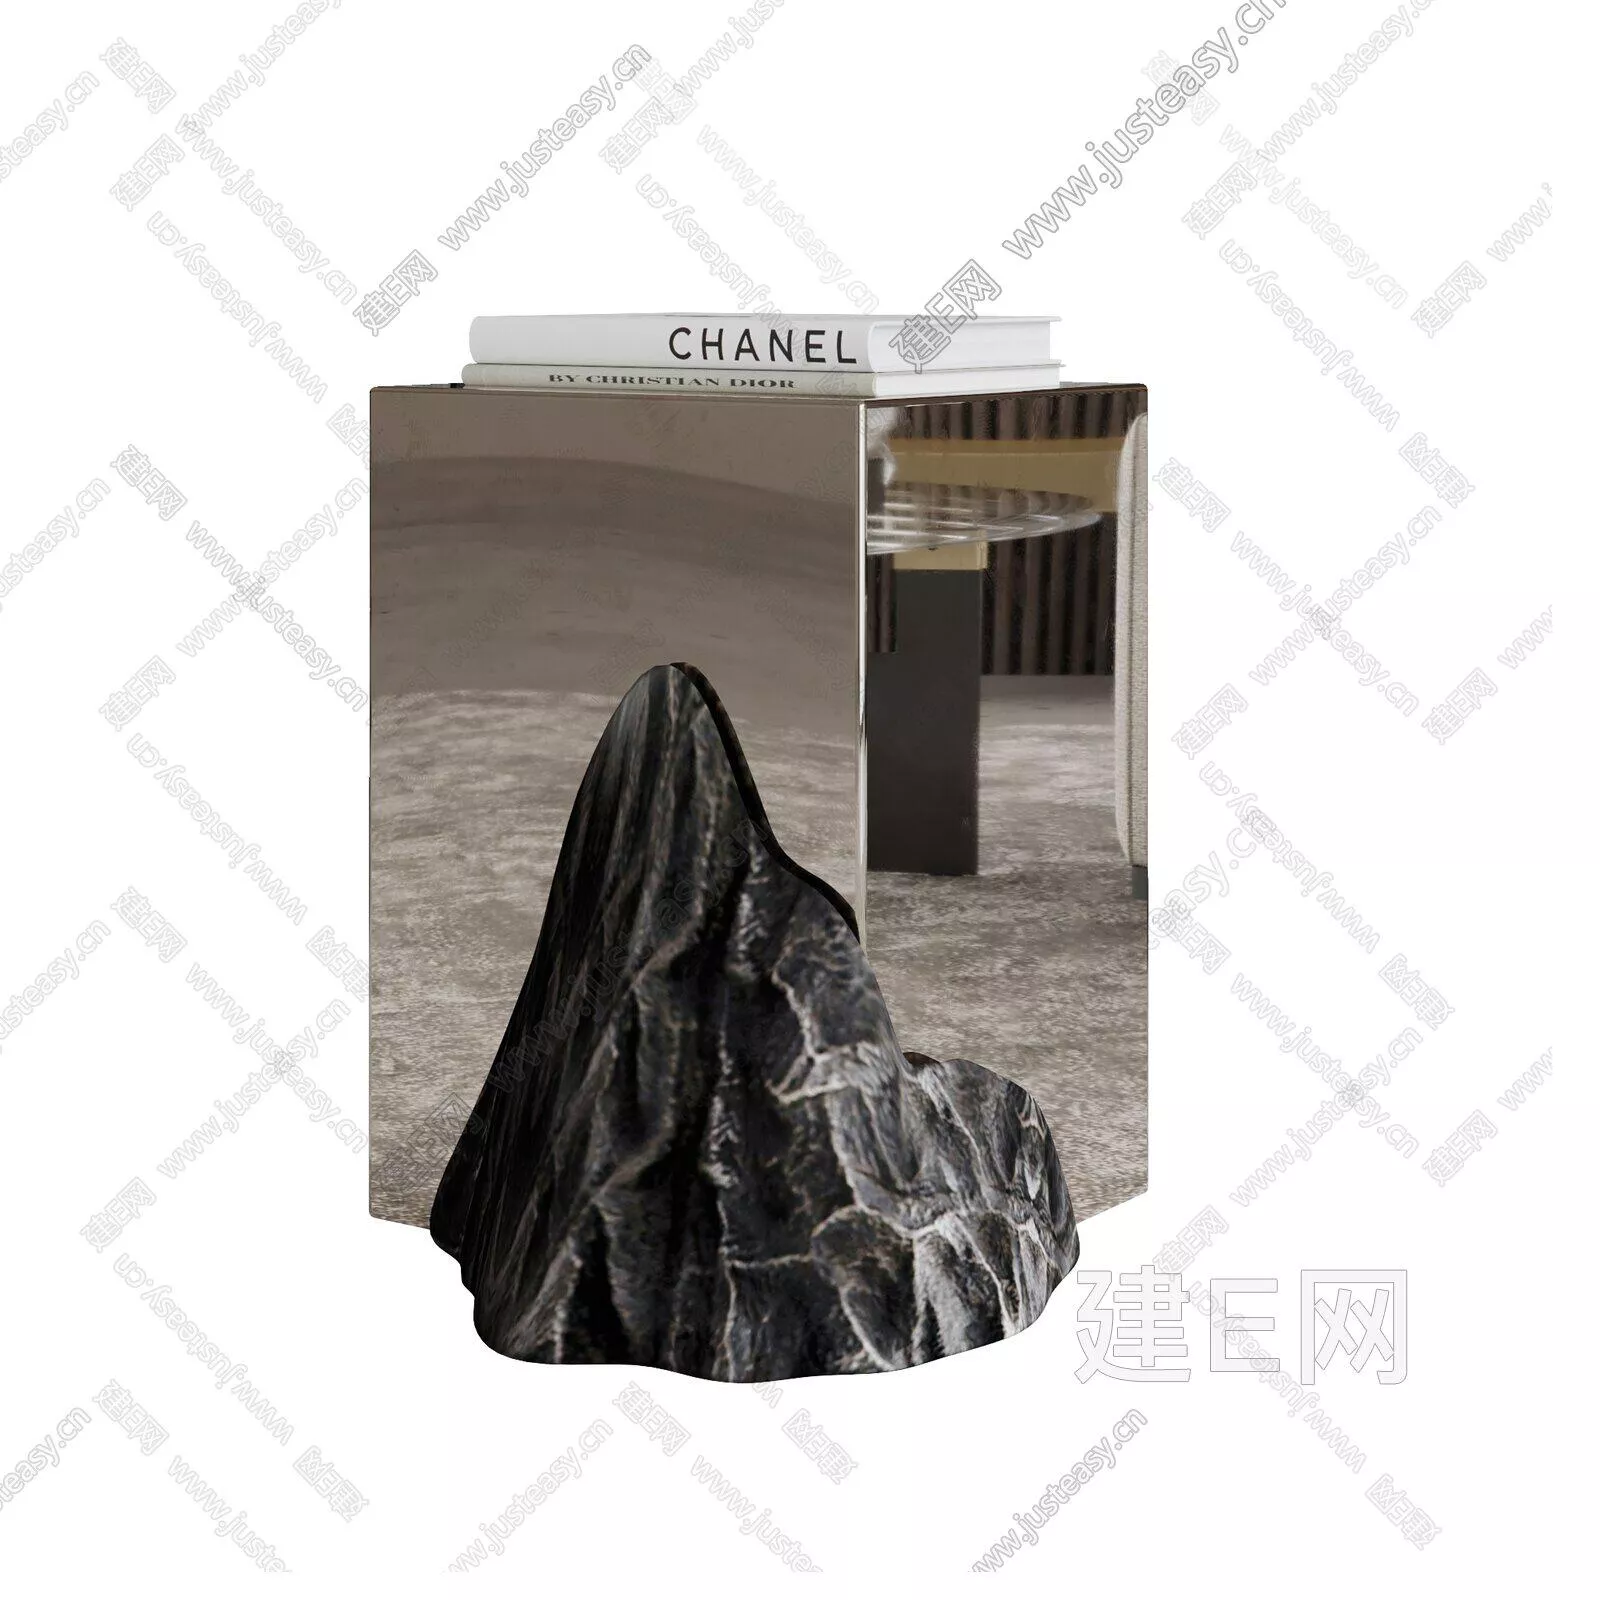 MODERN SIDE TABLE - SKETCHUP 3D MODEL - ENSCAPE - 104941656